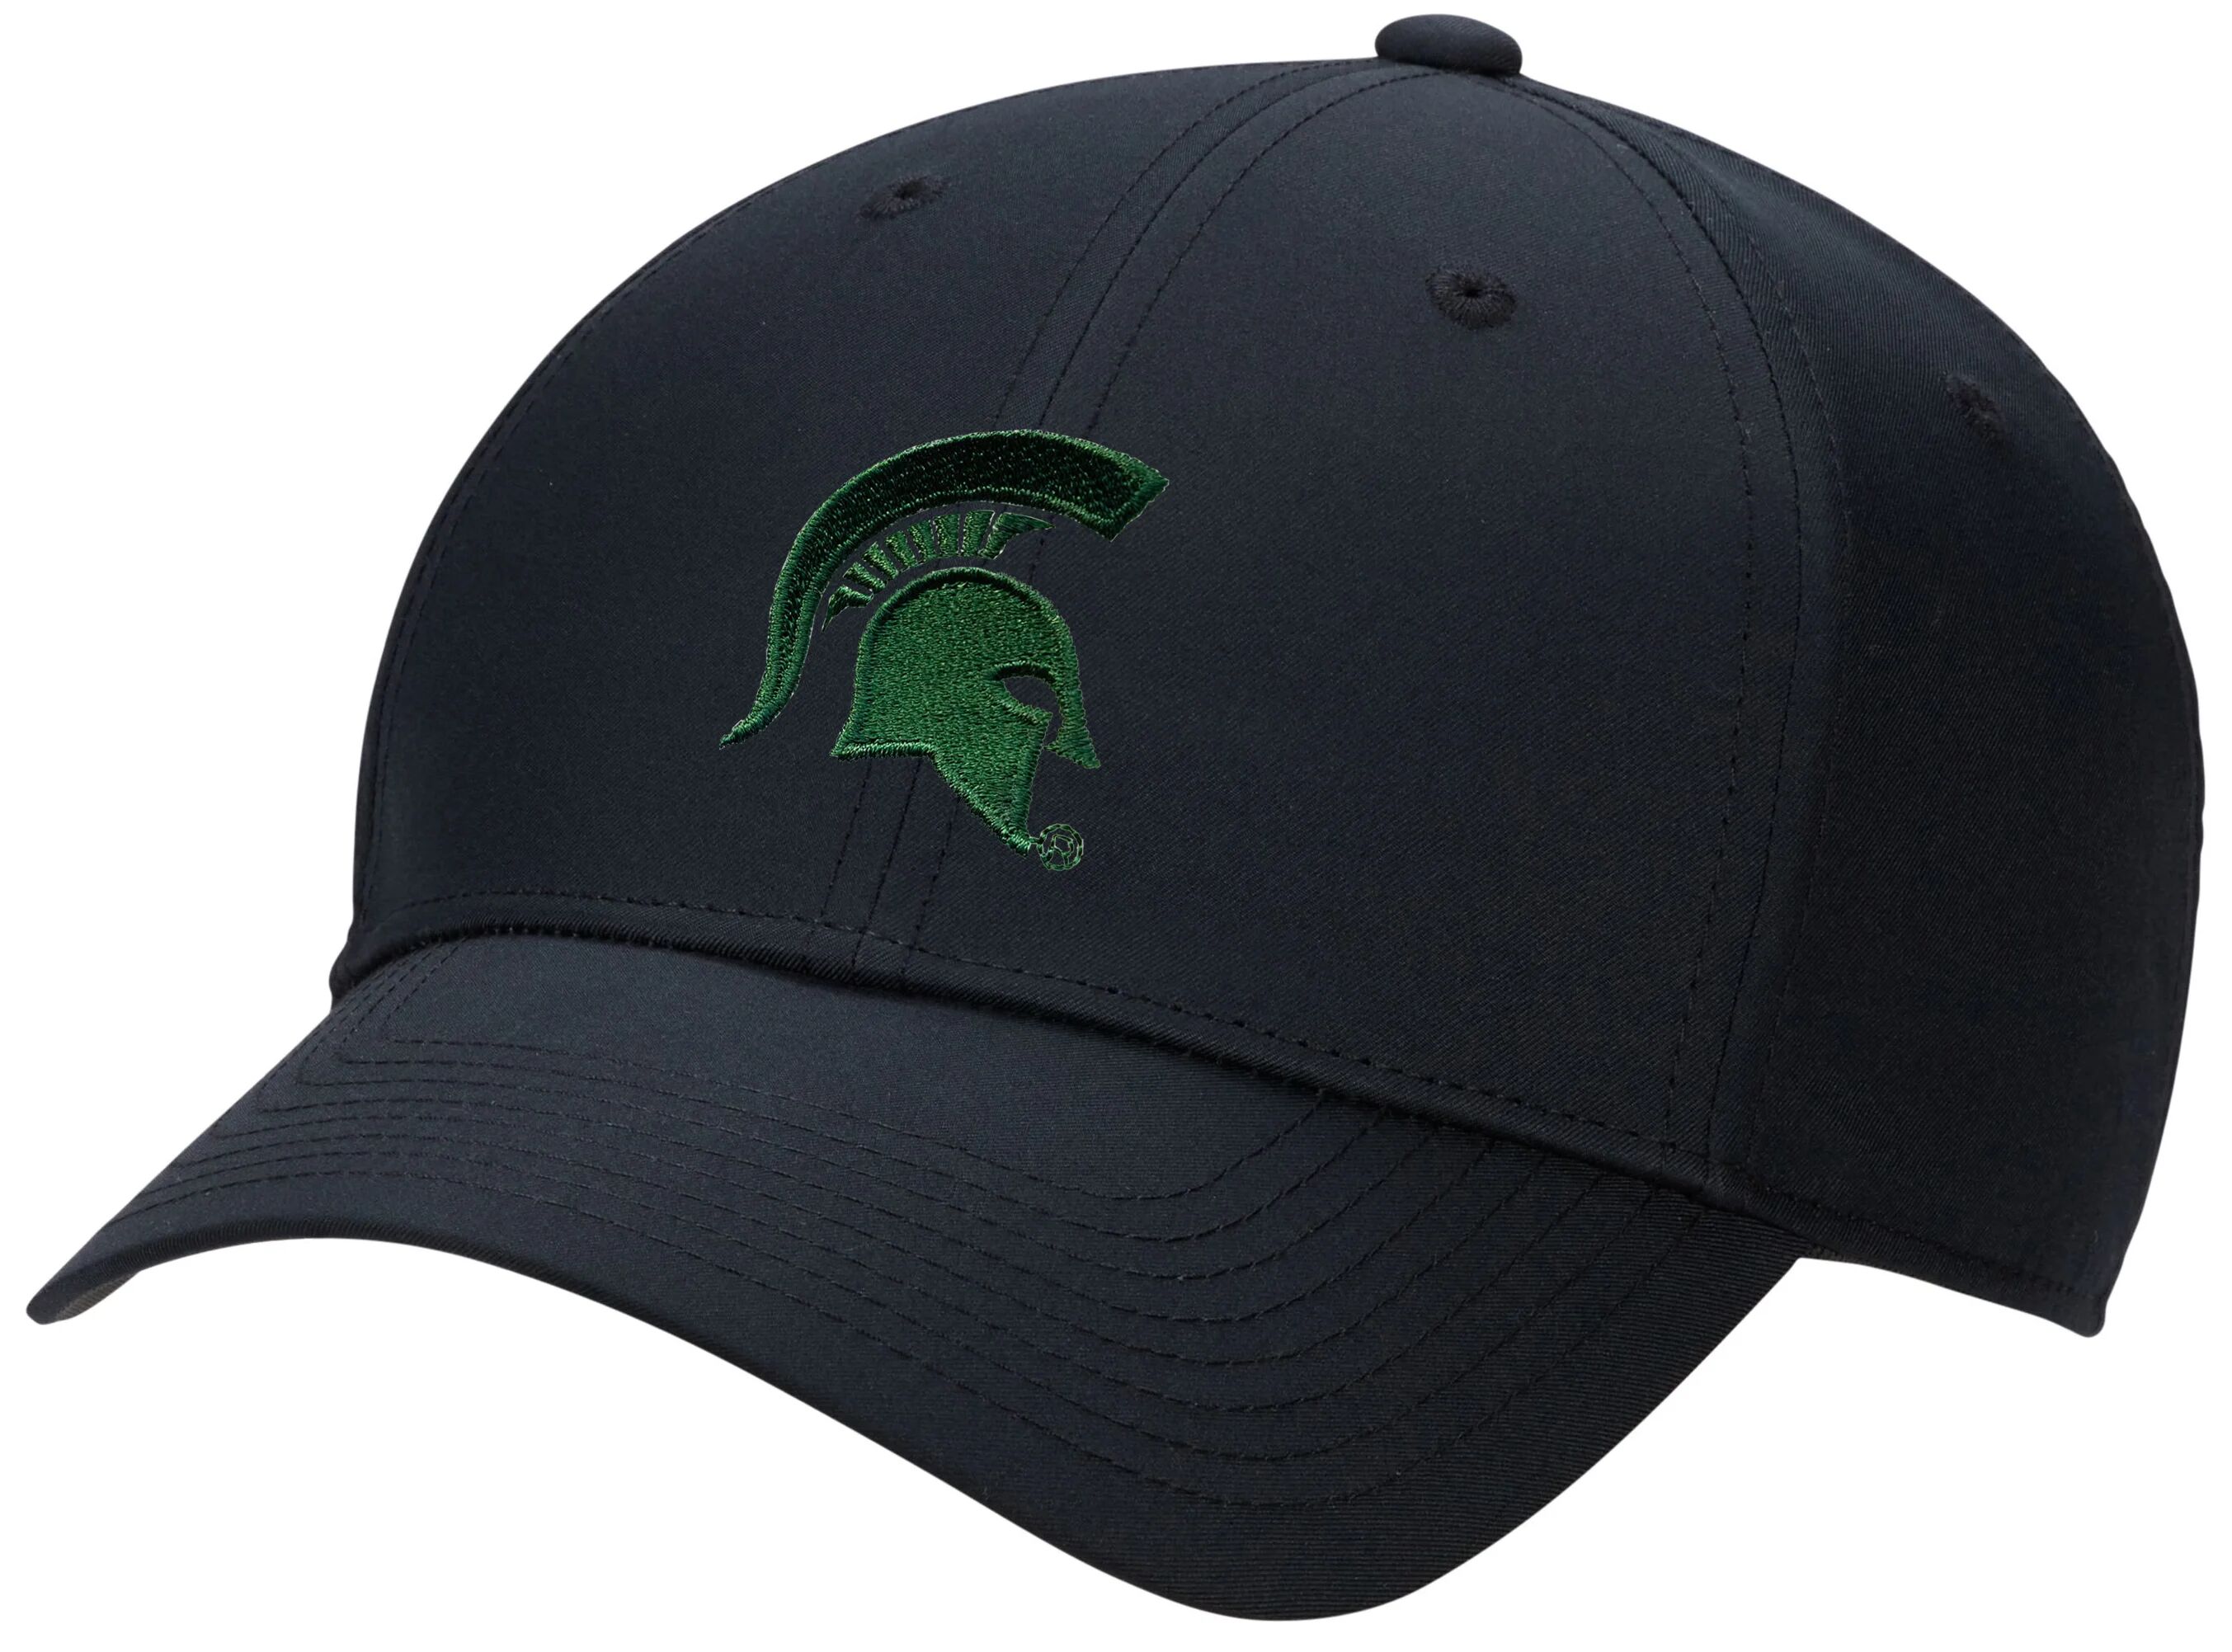 Nike Michigan State Spartans Dri-FIT Club Men's Golf Hat - Helmet Logo - Black, Size: Small/Medium